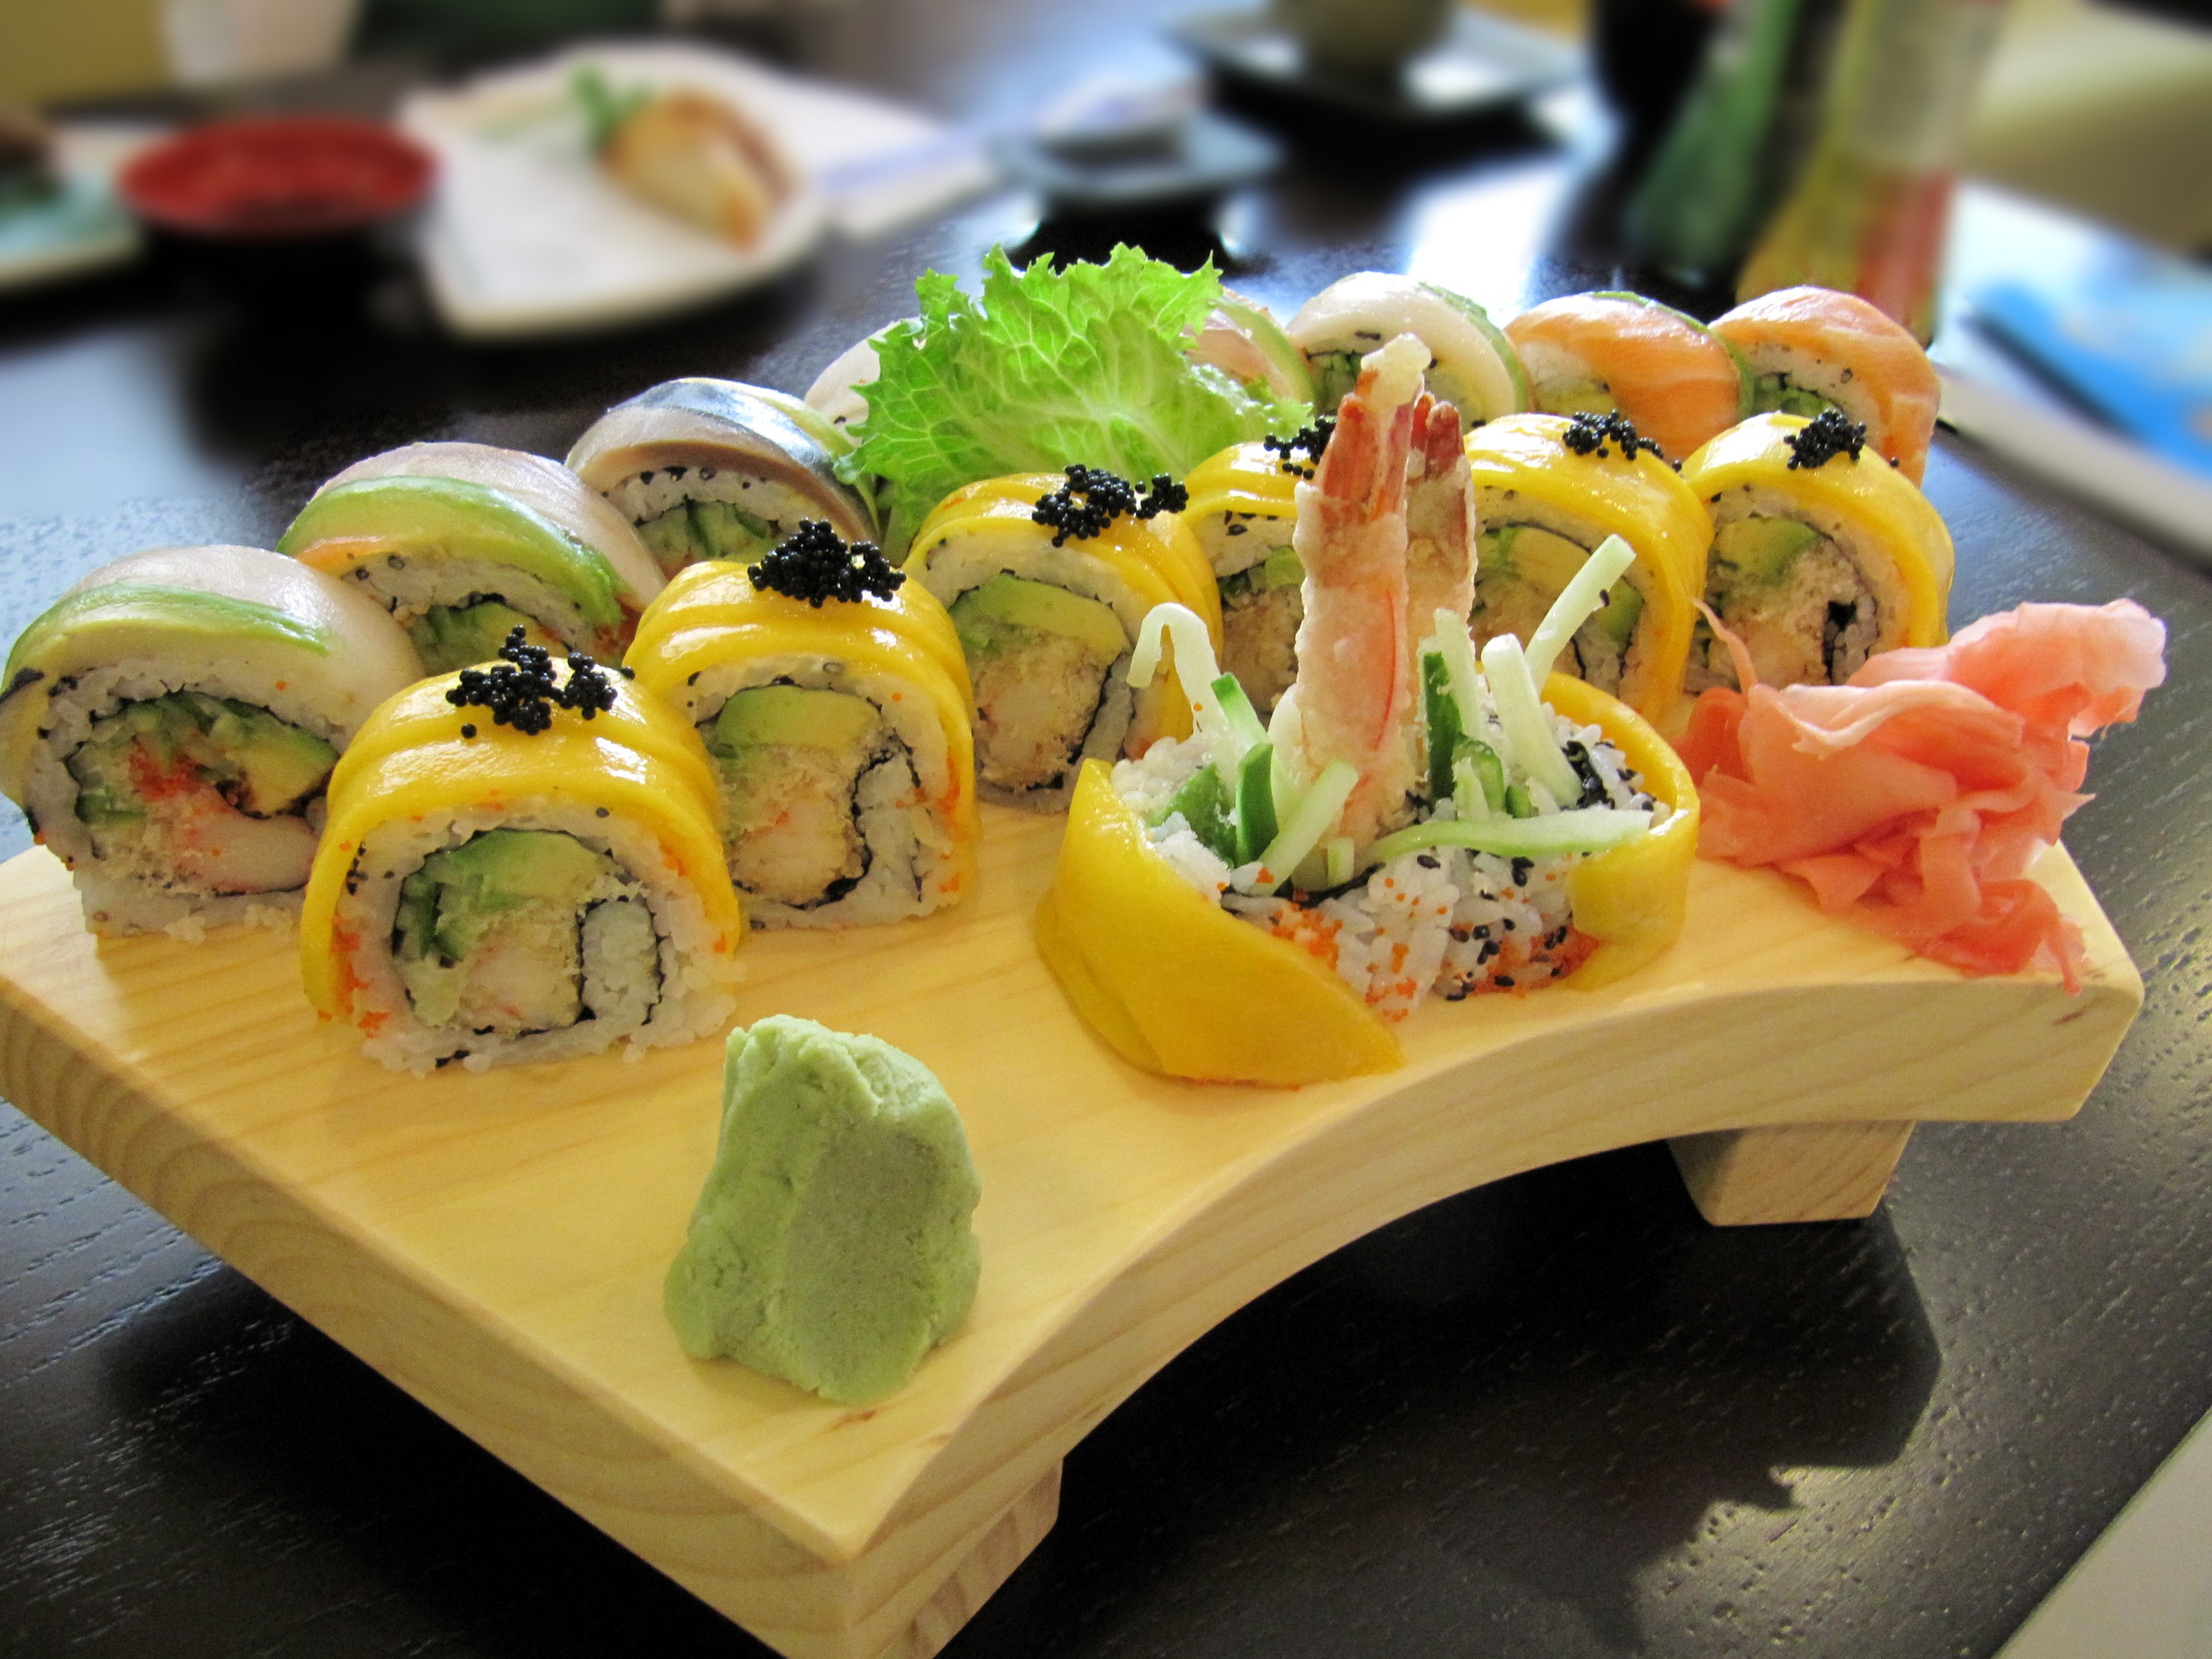 美味寿司的做法,入口柔软,尝到外皮和糯米饭的味道